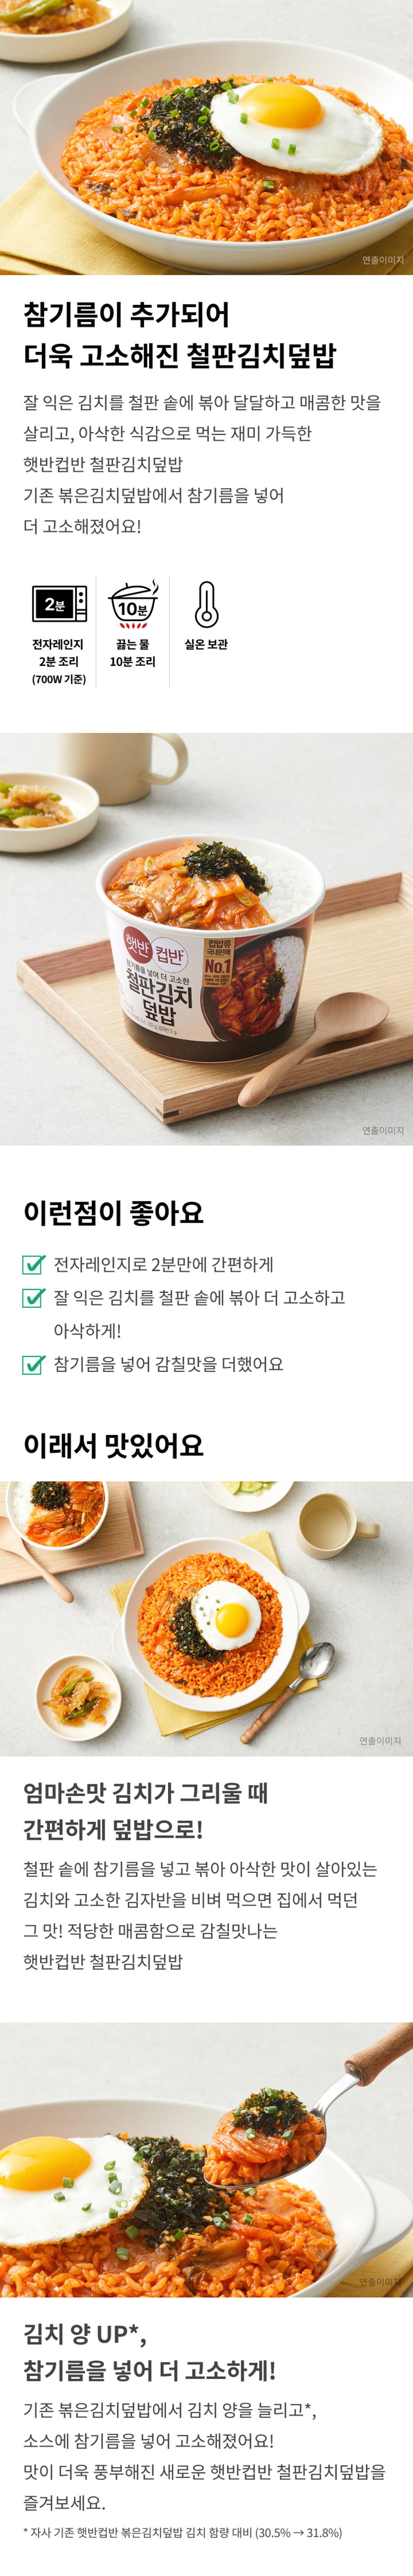 햇반컵반-철판김치덮밥-254g-1000140127341